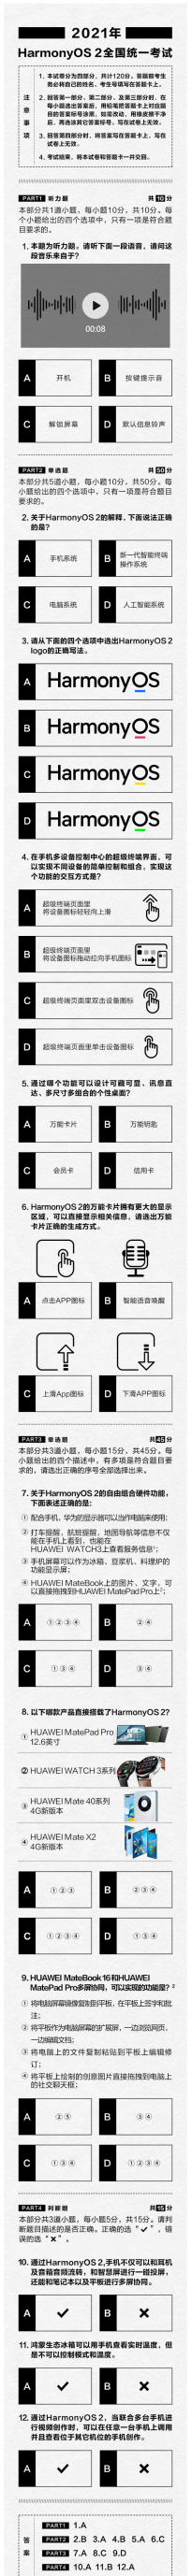 华为发布鸿蒙HarmonyOS 2考题试卷 HarmonyOS 2升级用户破千万